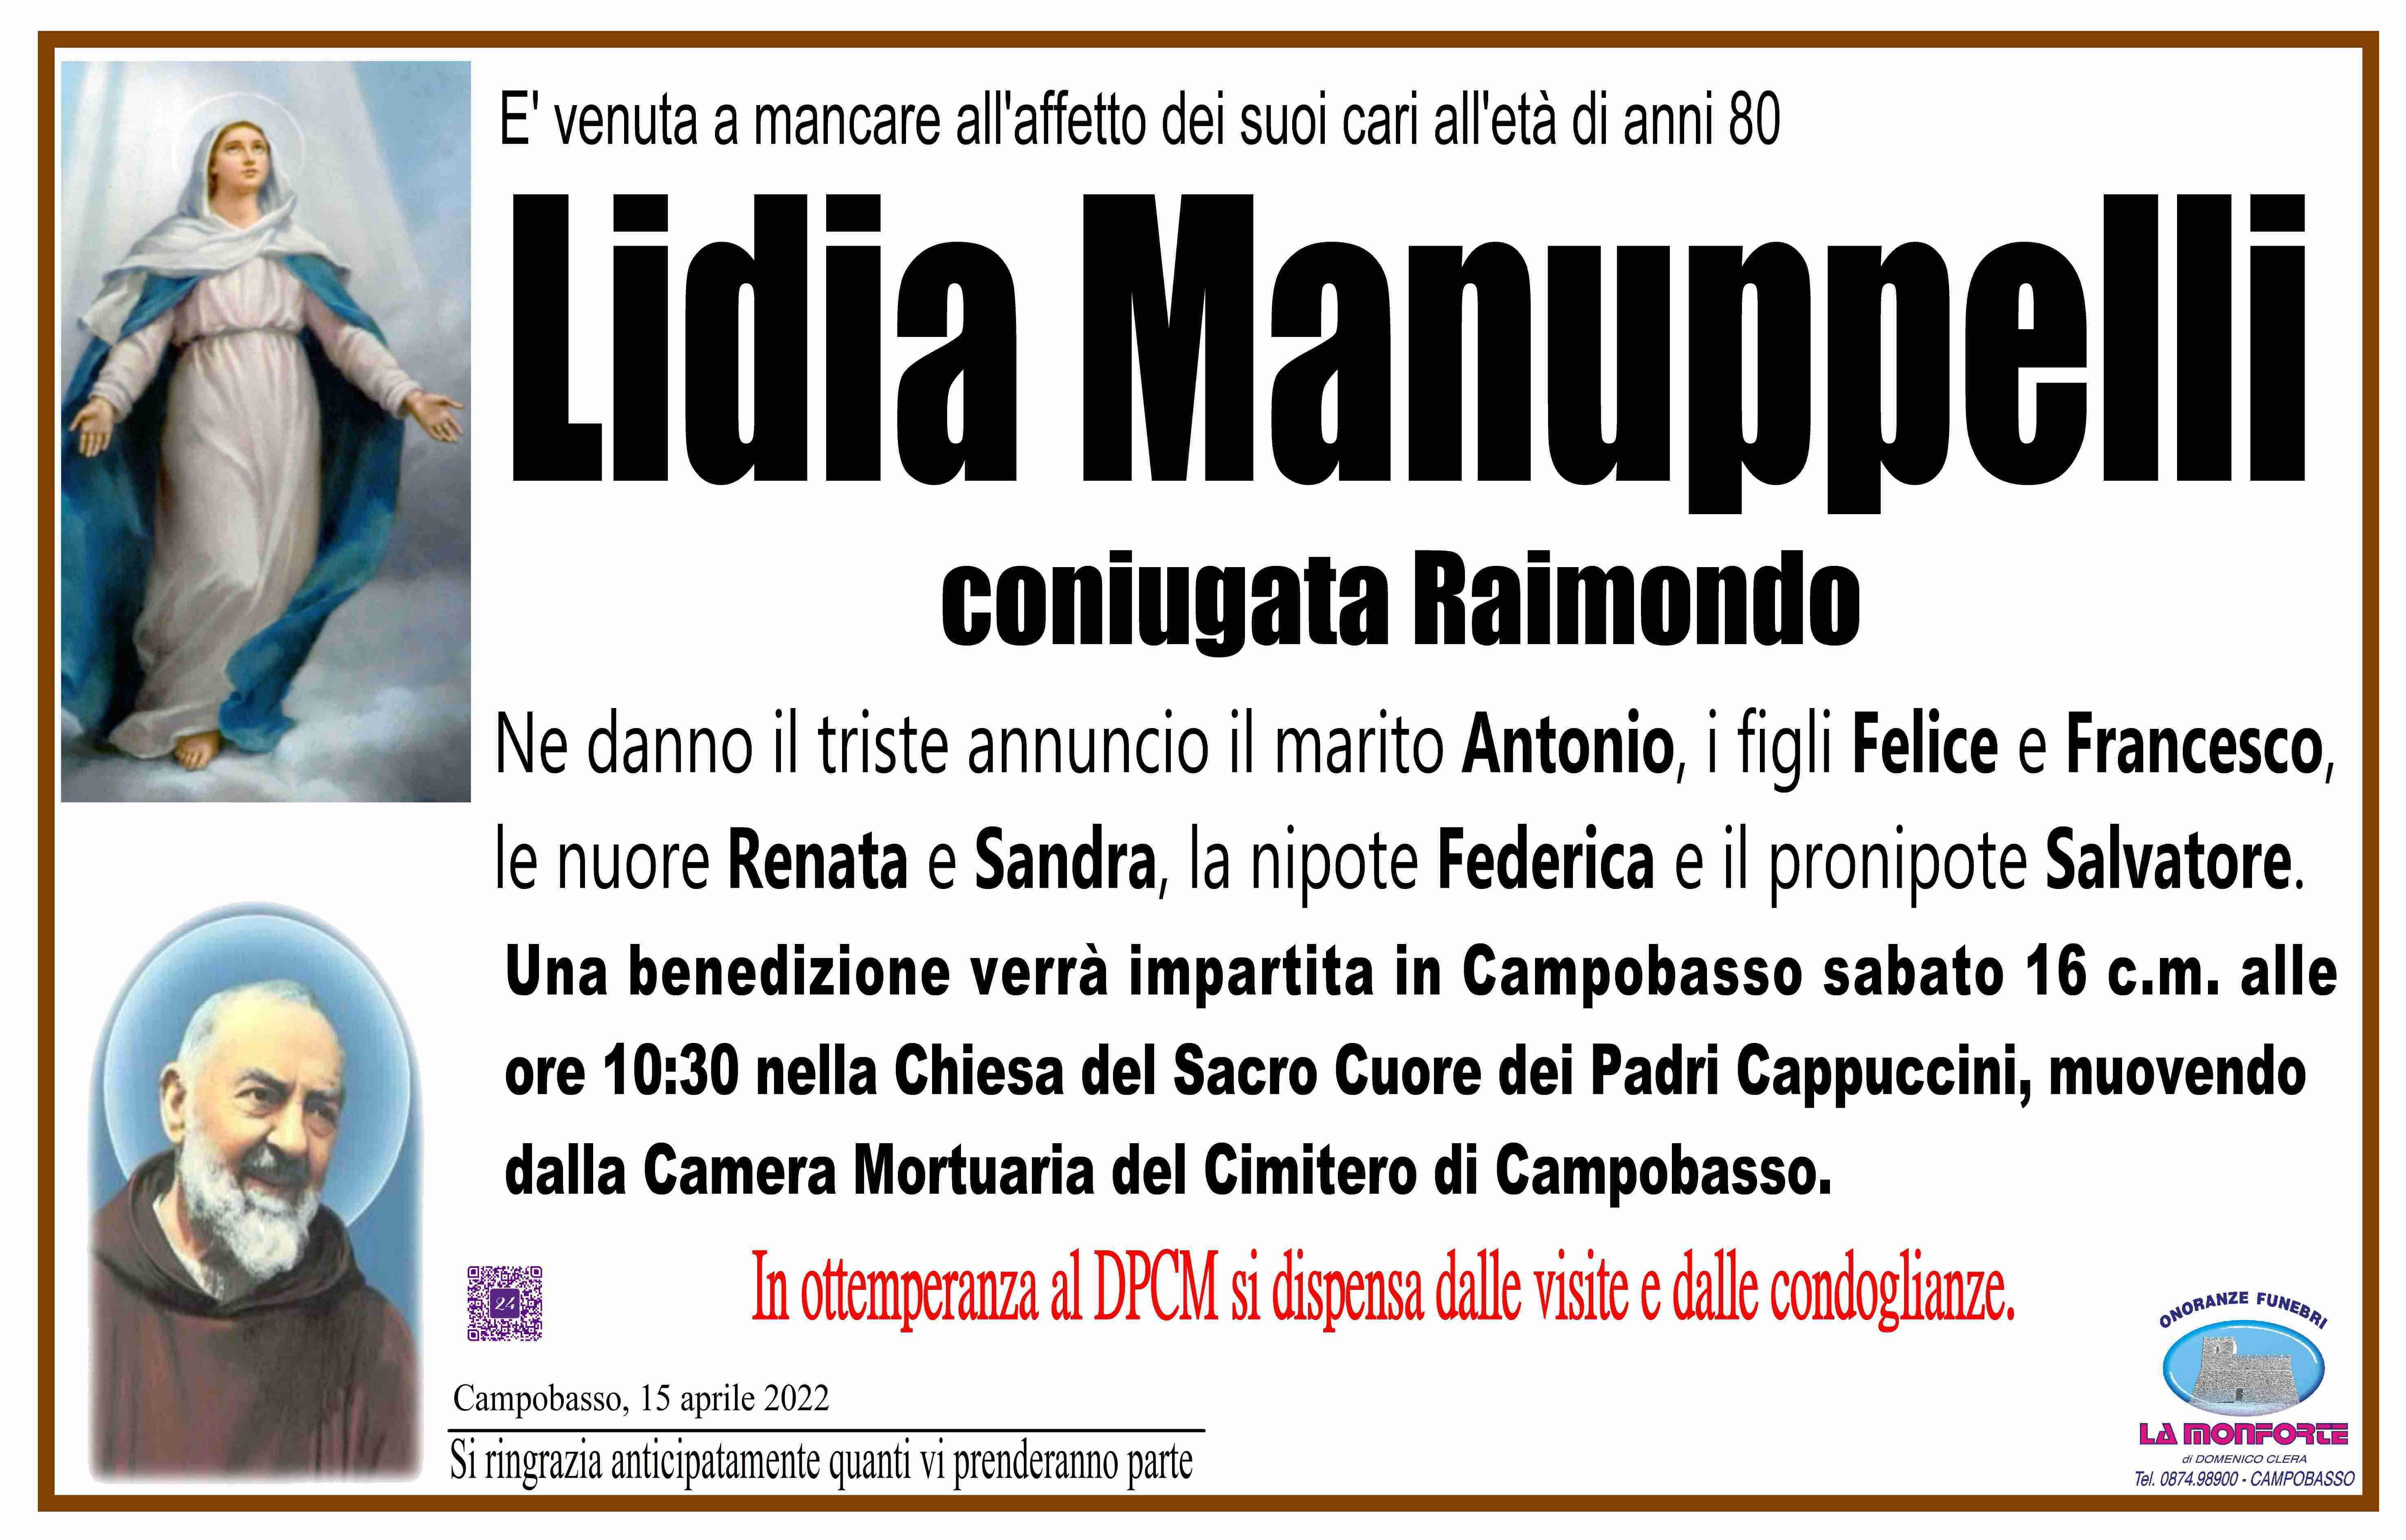 Lidia Manuppelli